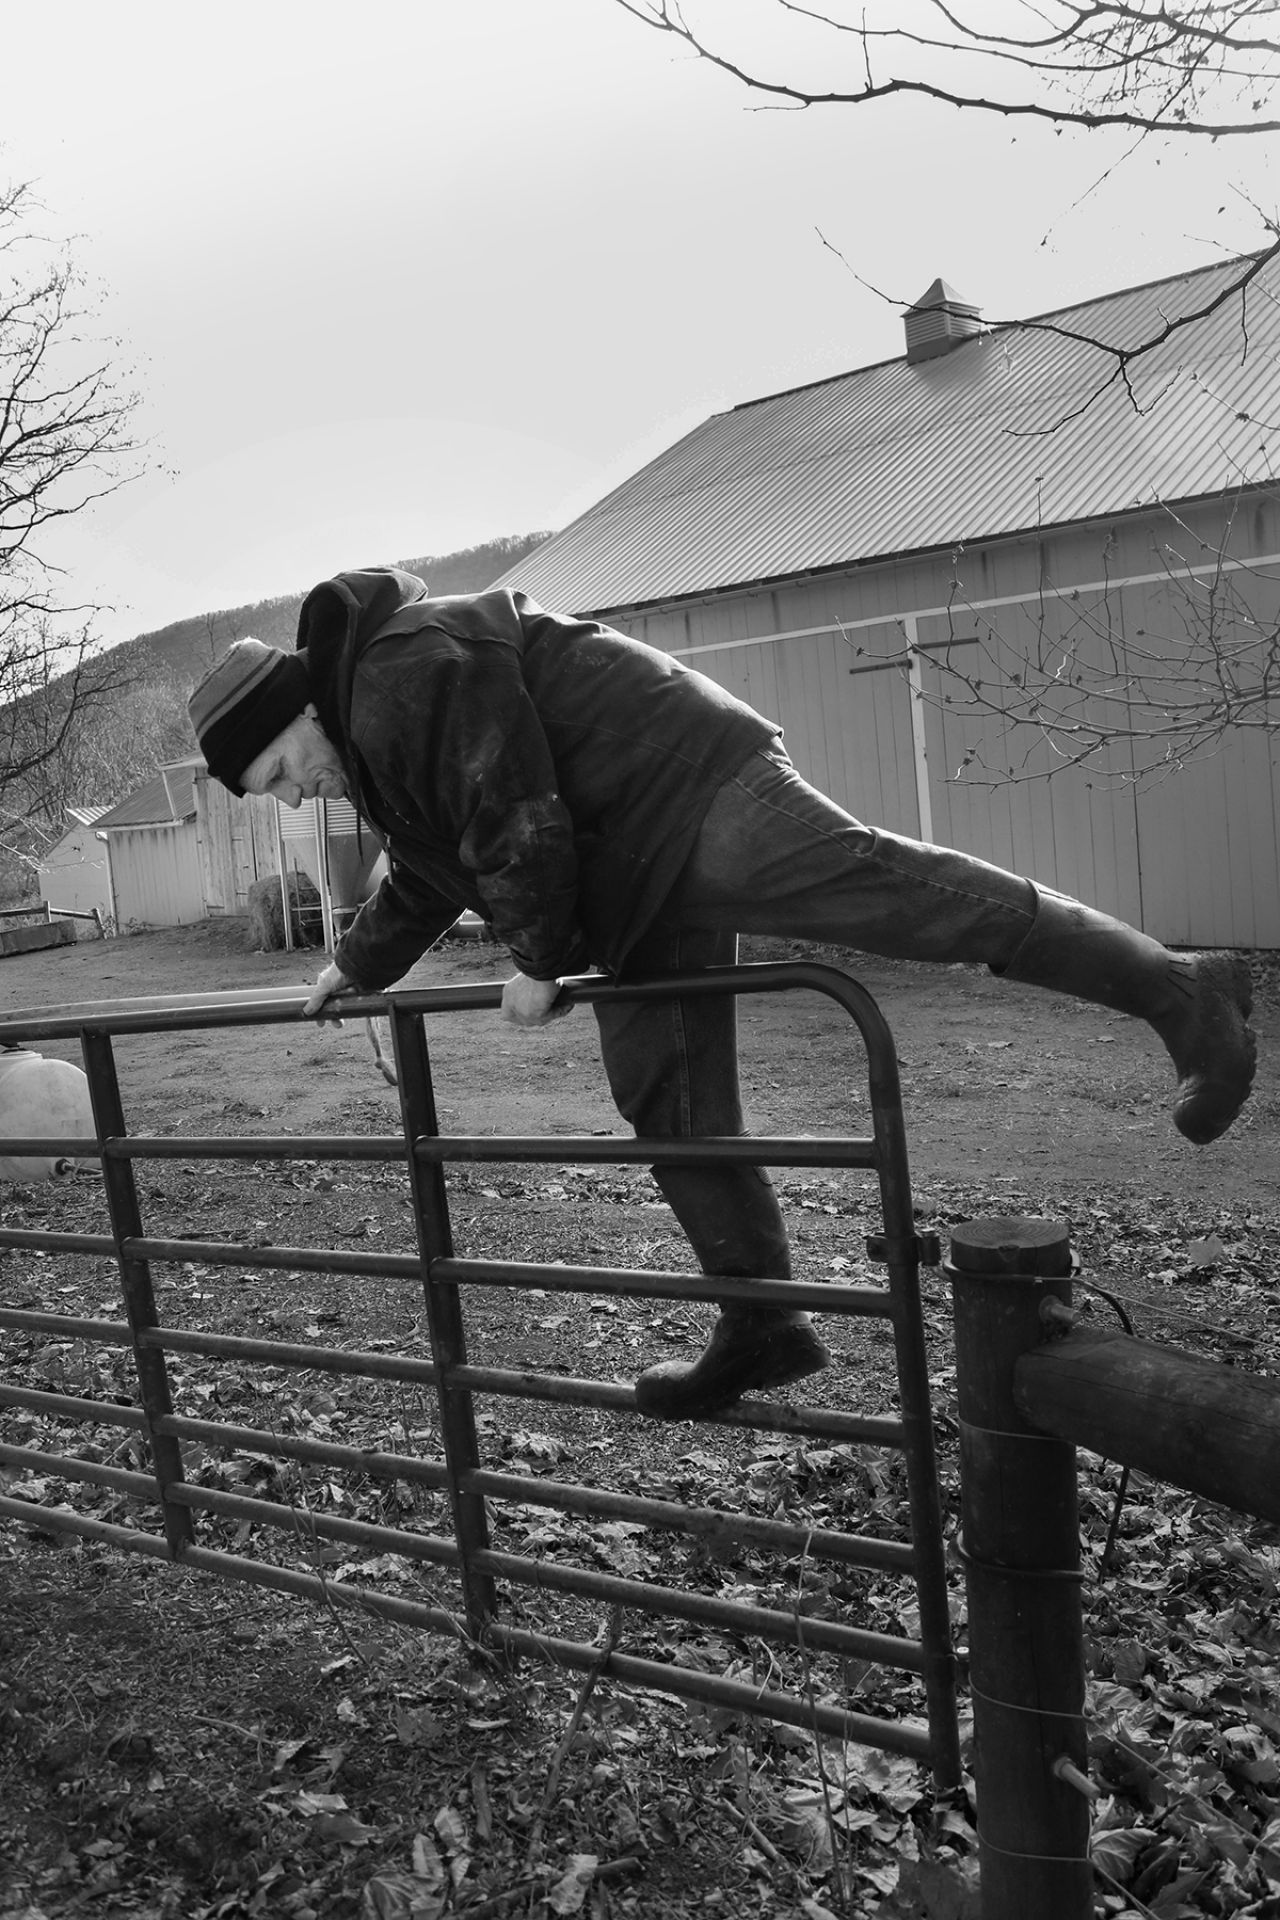 Farmer climbs over a fence gate